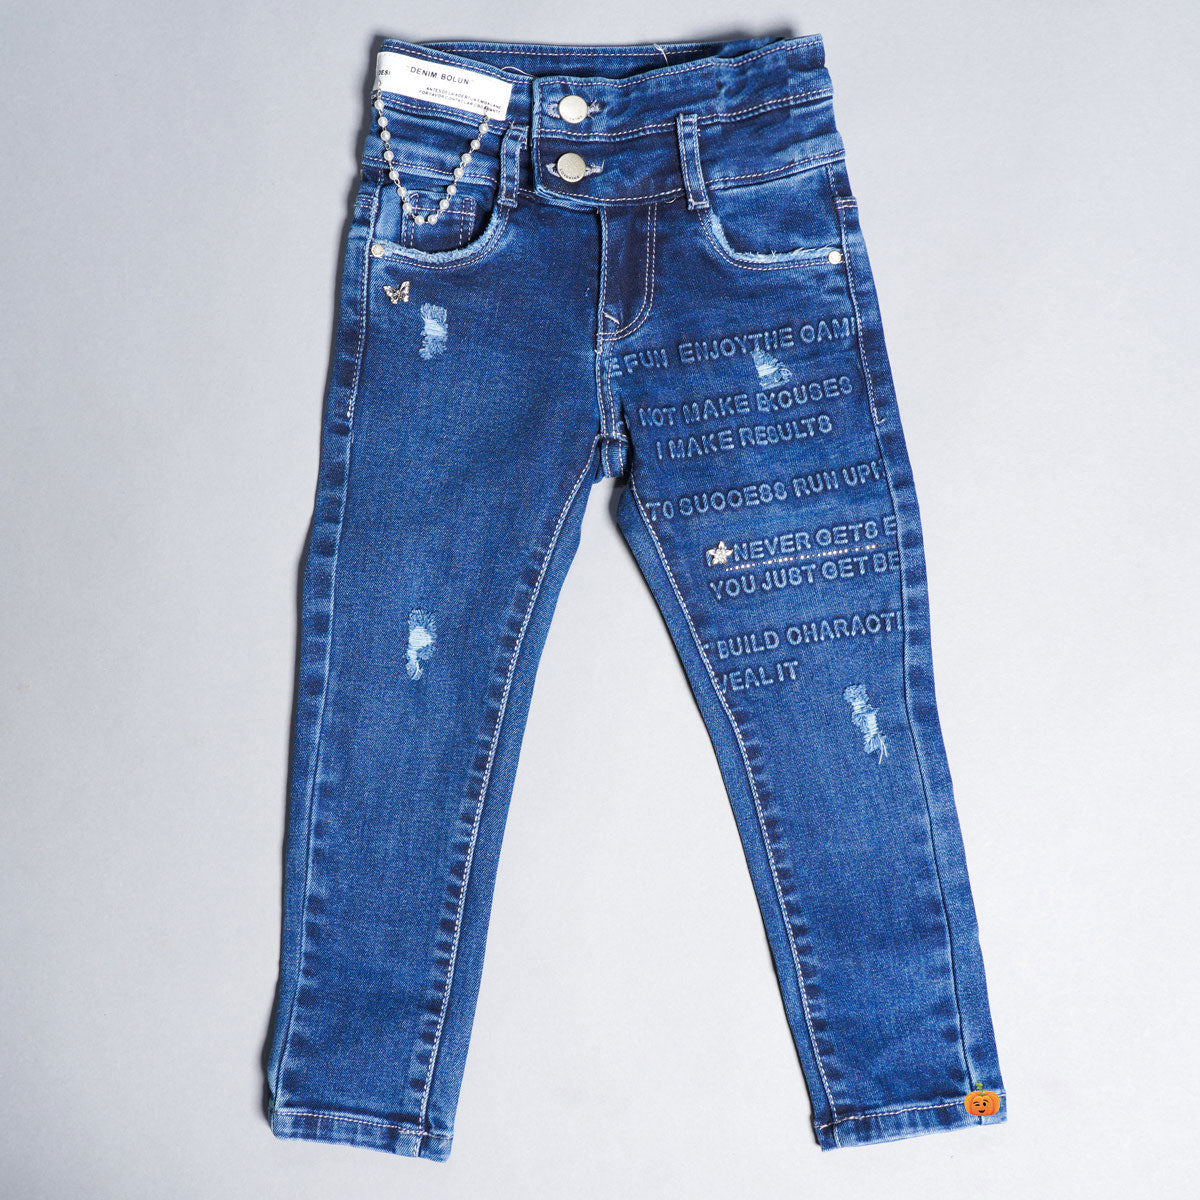 Women's Straight Leg Jeans: Shop Straight Fit Jeans | Levi's® US